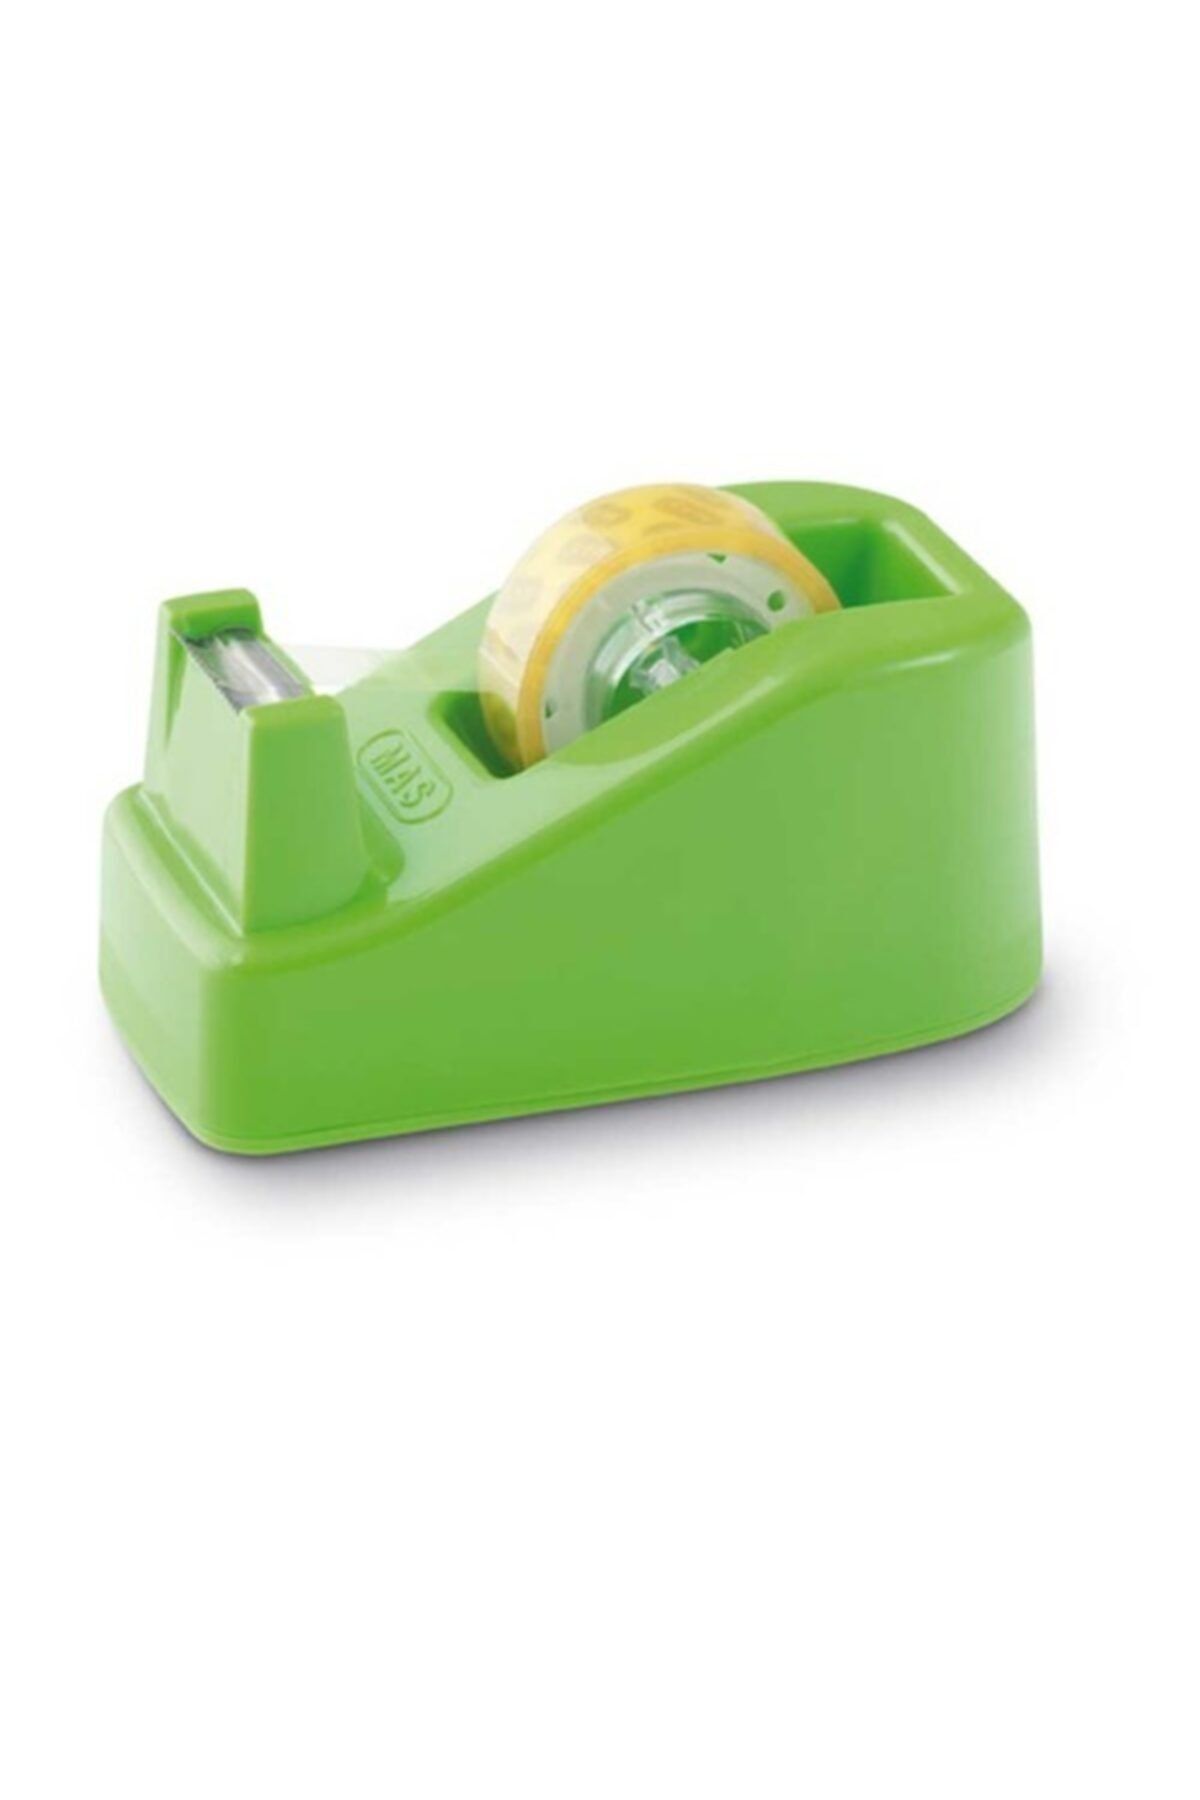 Genel Markalar Selefon Bant Makinası Fiesta Küçük 12x20 Yeşil 640